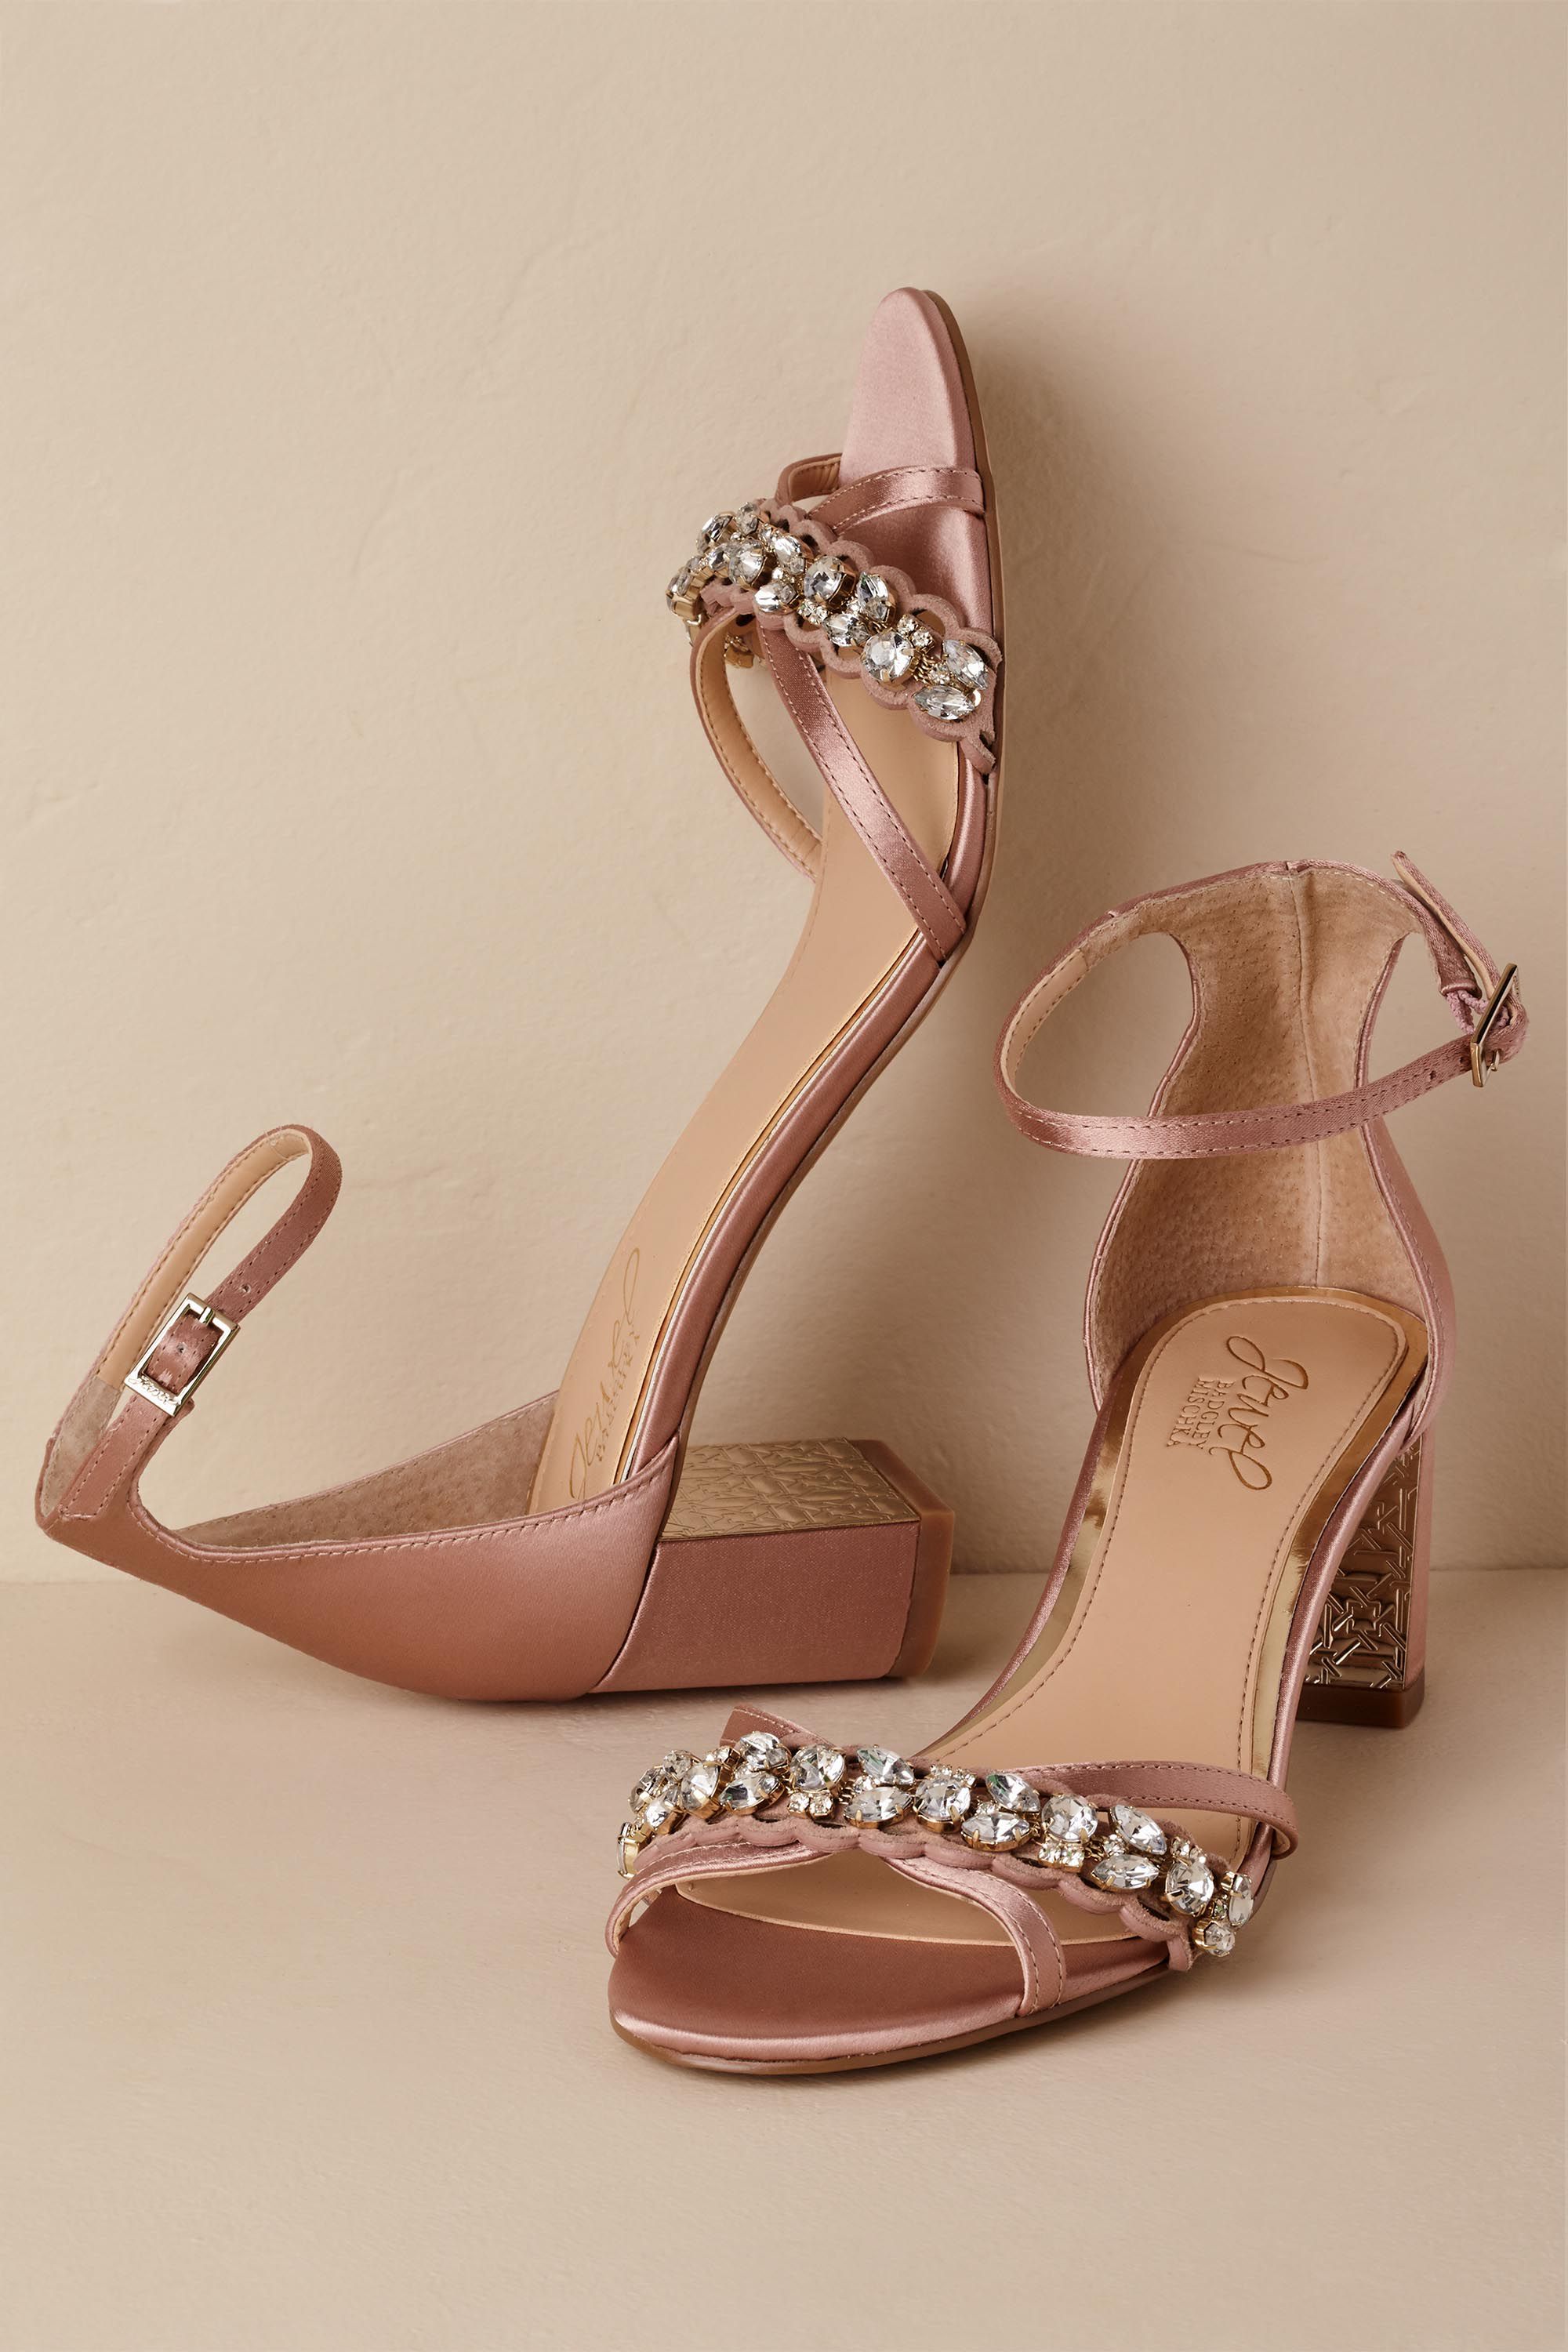 jewel block heels